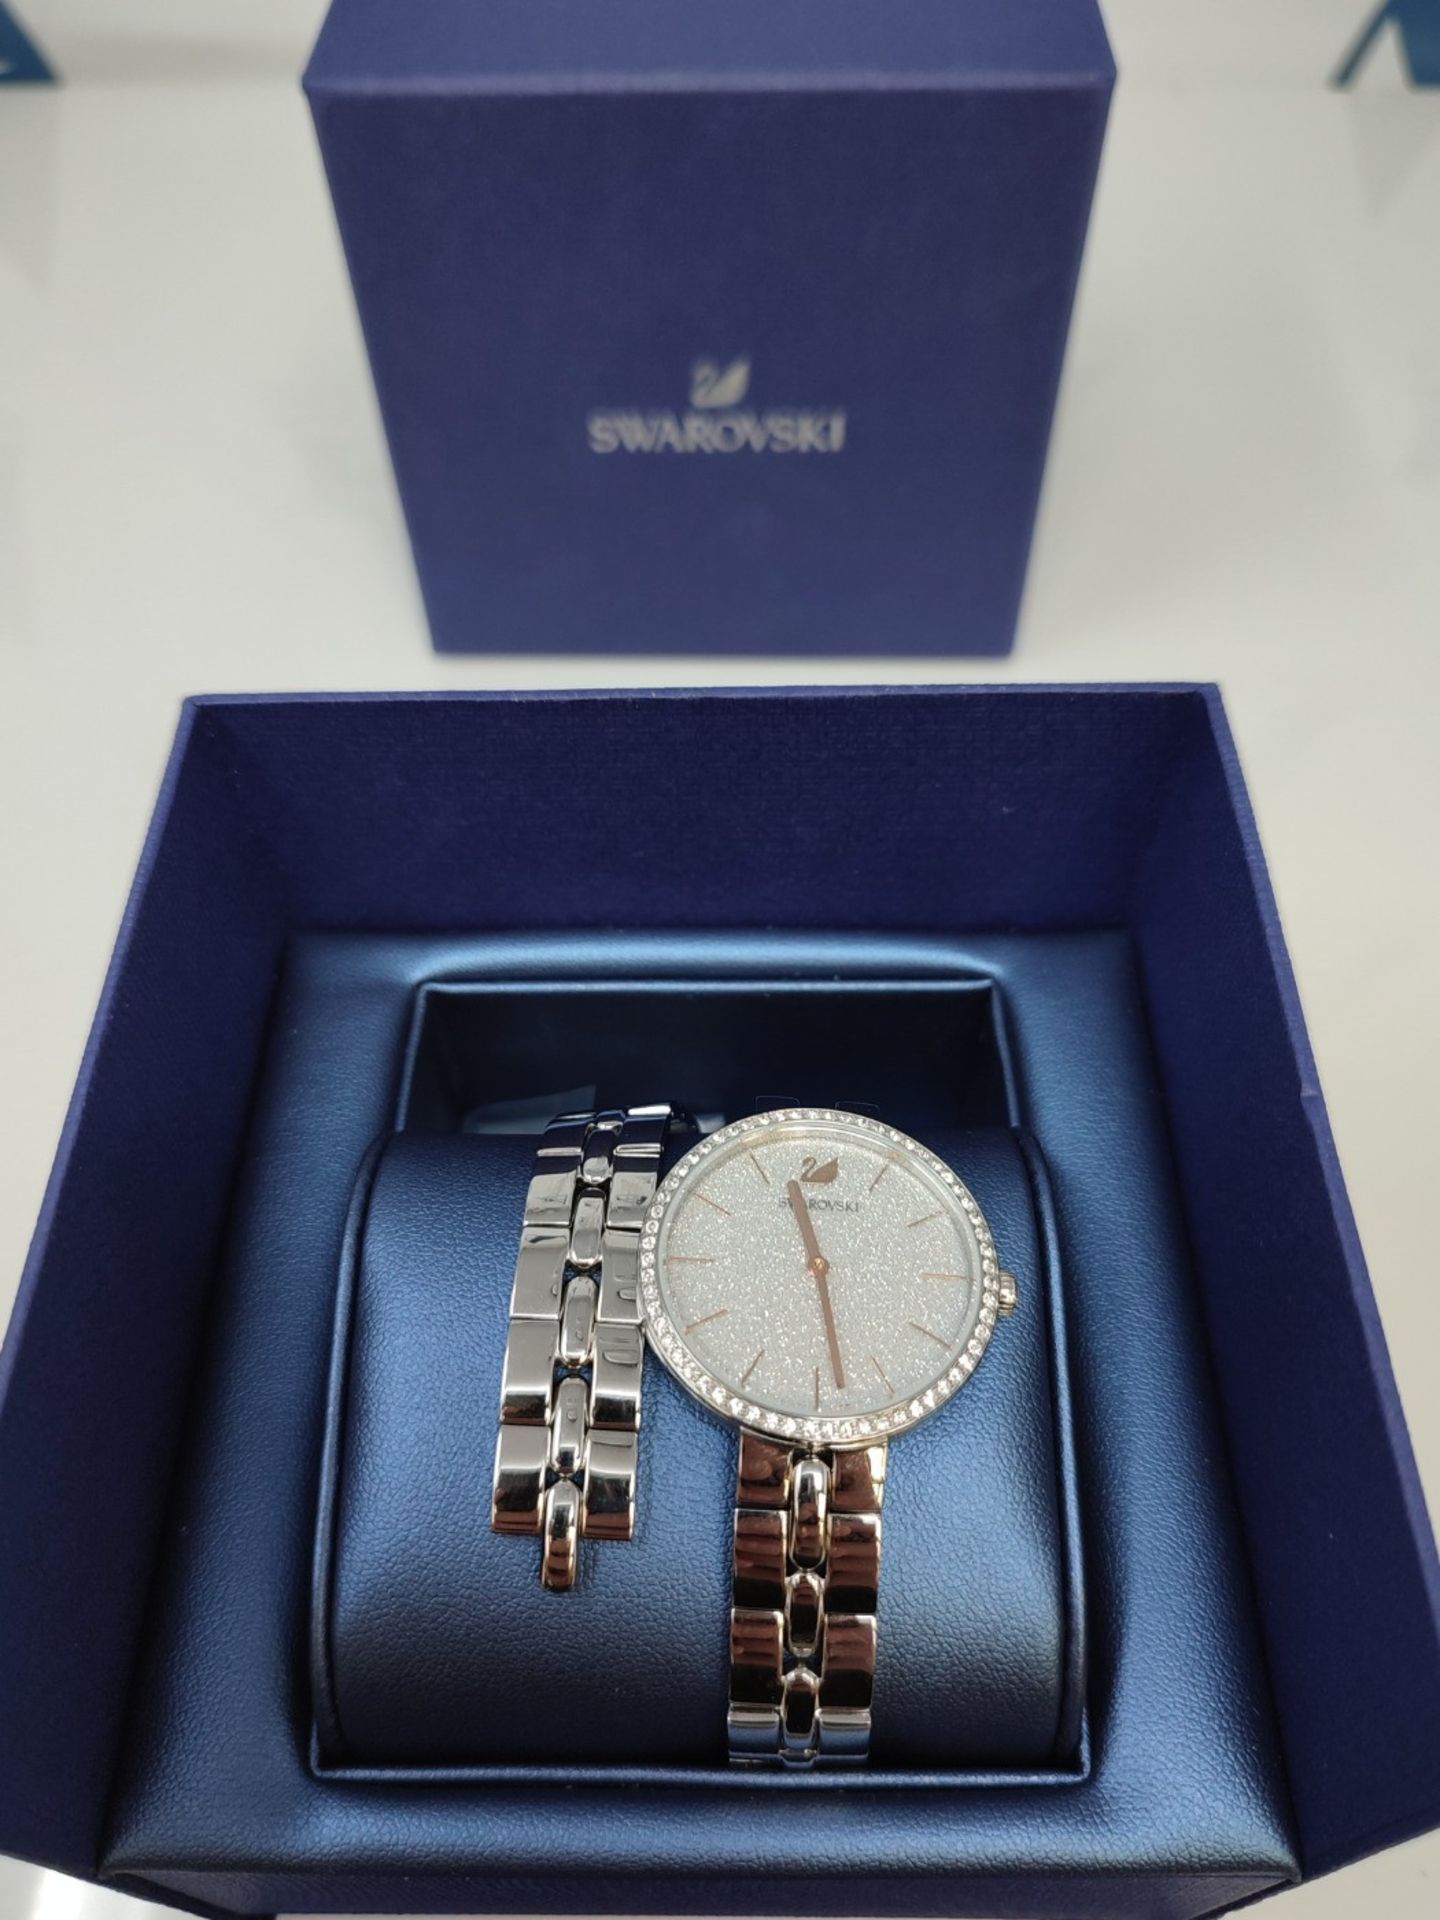 RRP £158.00 Swarovski Cosmopolitan watch, metal bracelet, silver-colored, stainless steel - Image 2 of 6